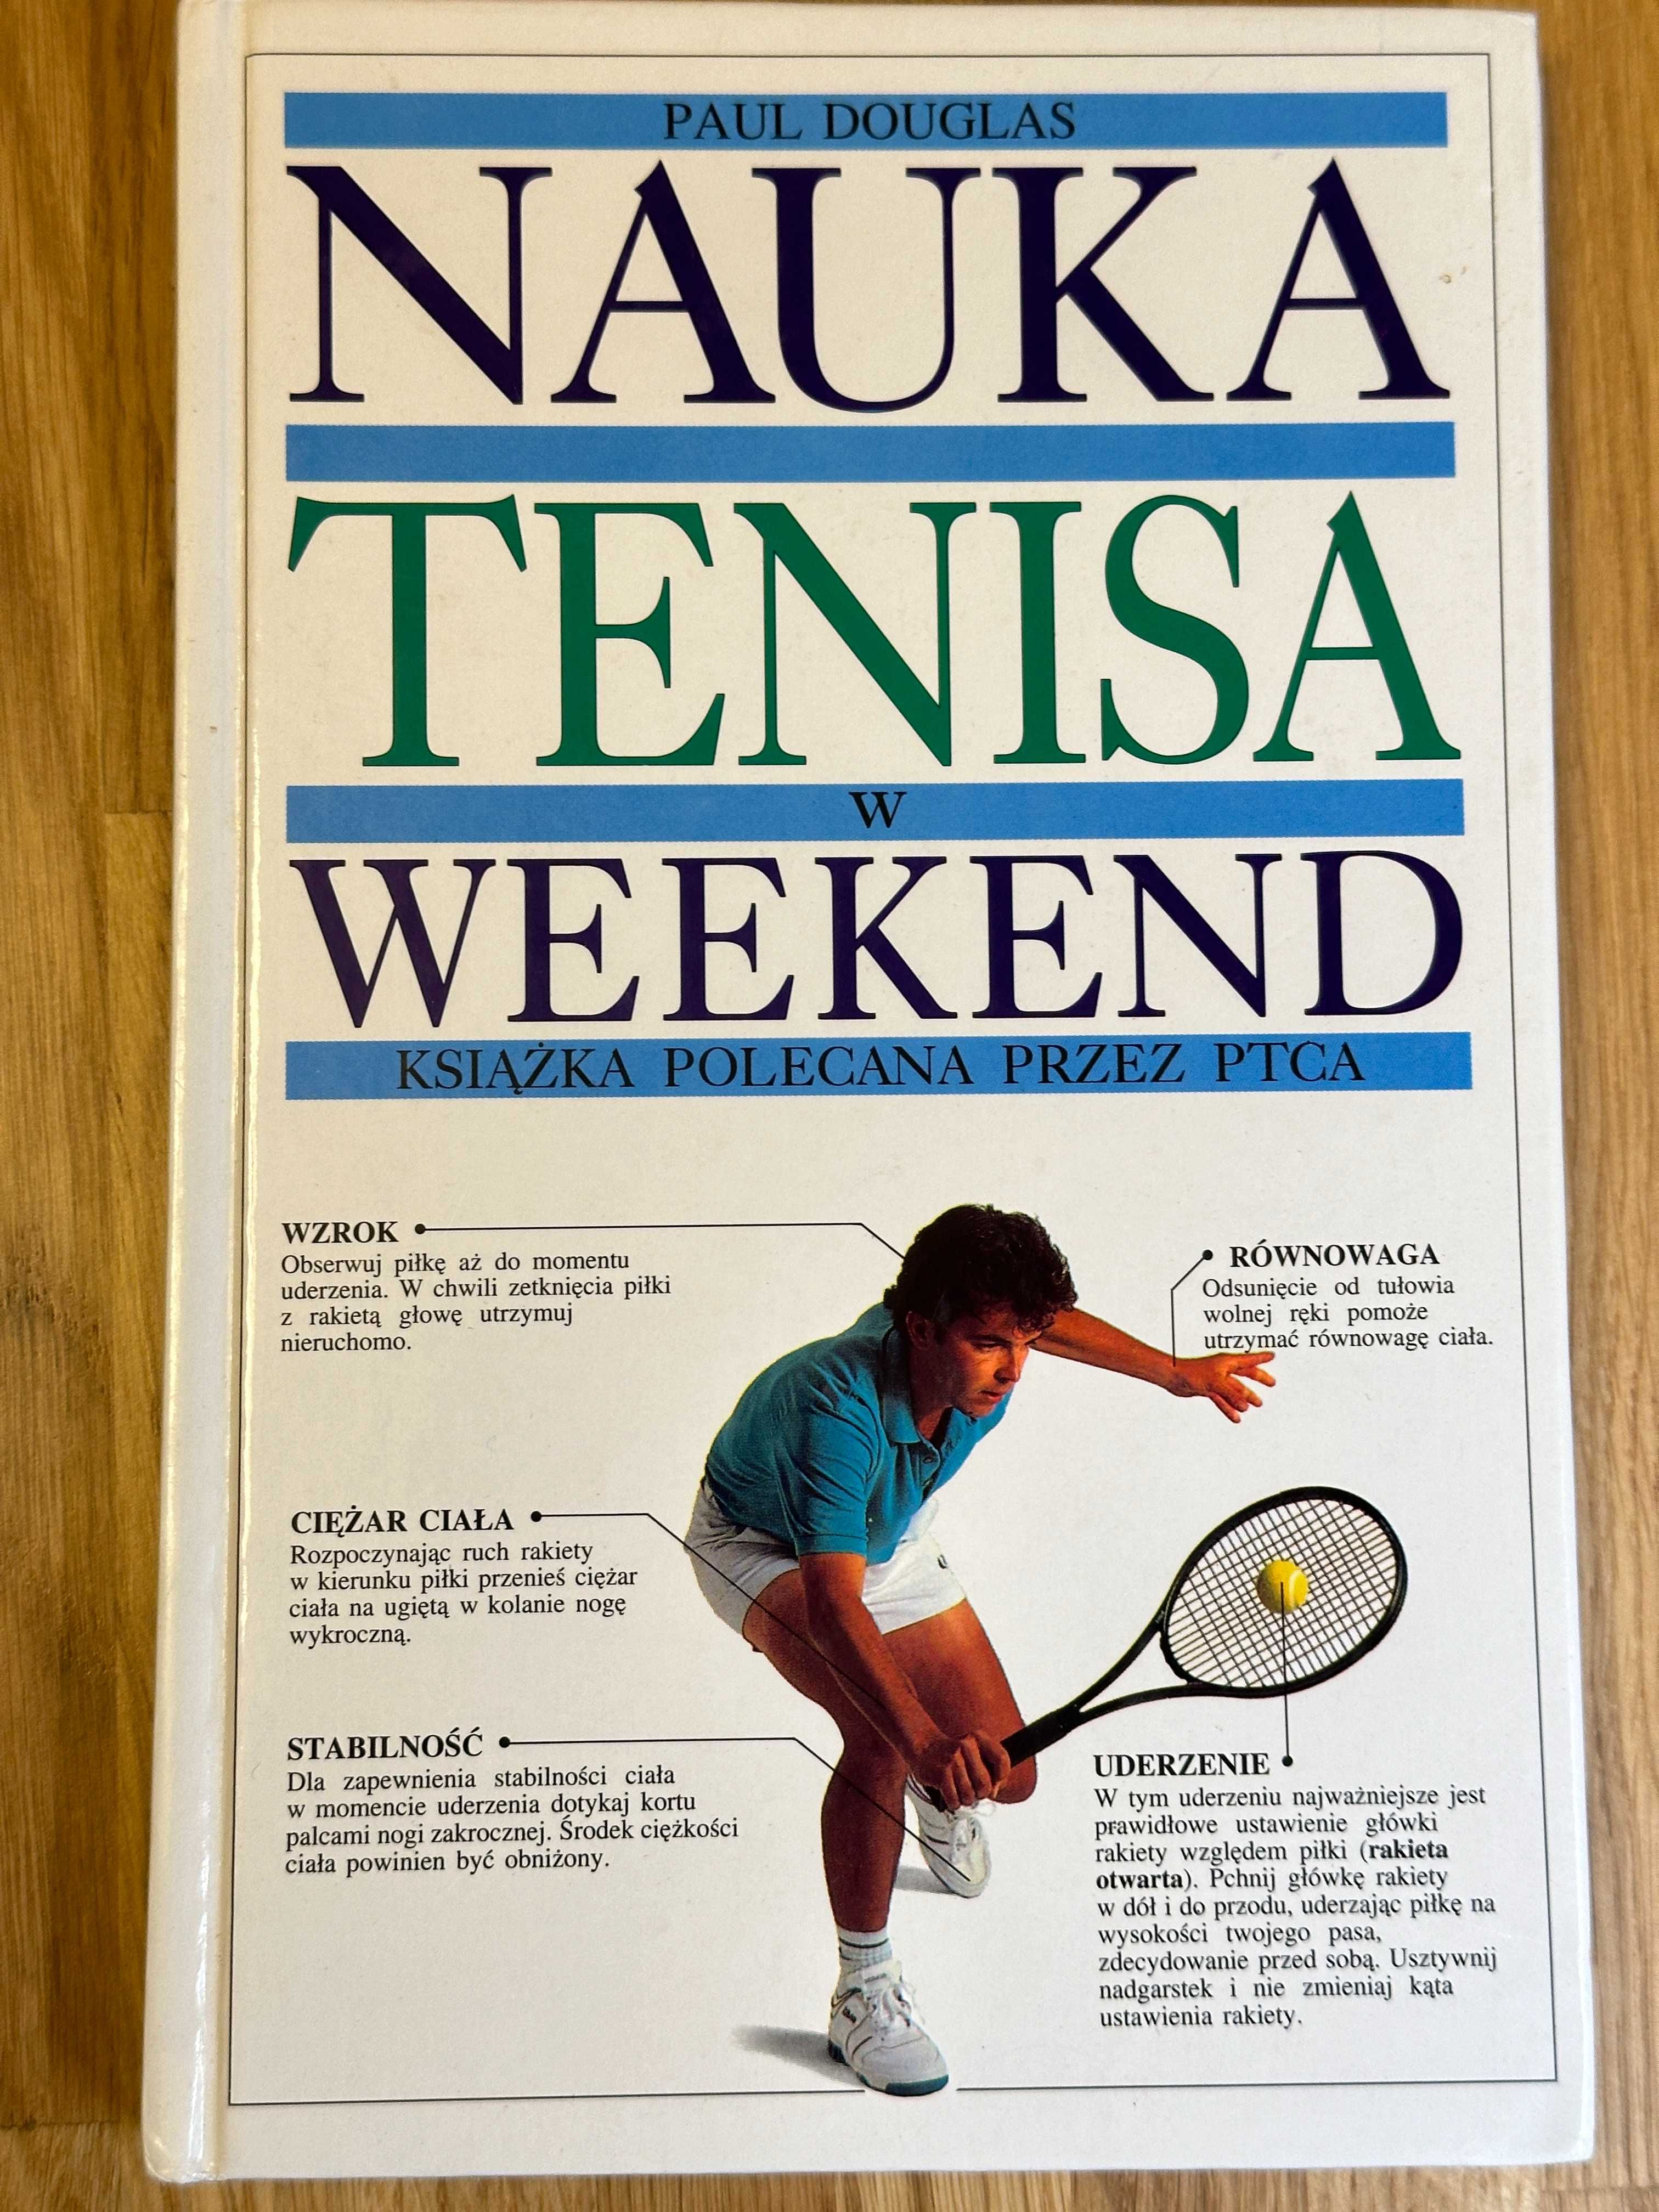 Nauka Tenisa w Weekend - Paul Douglas - Idealny prezent !!!